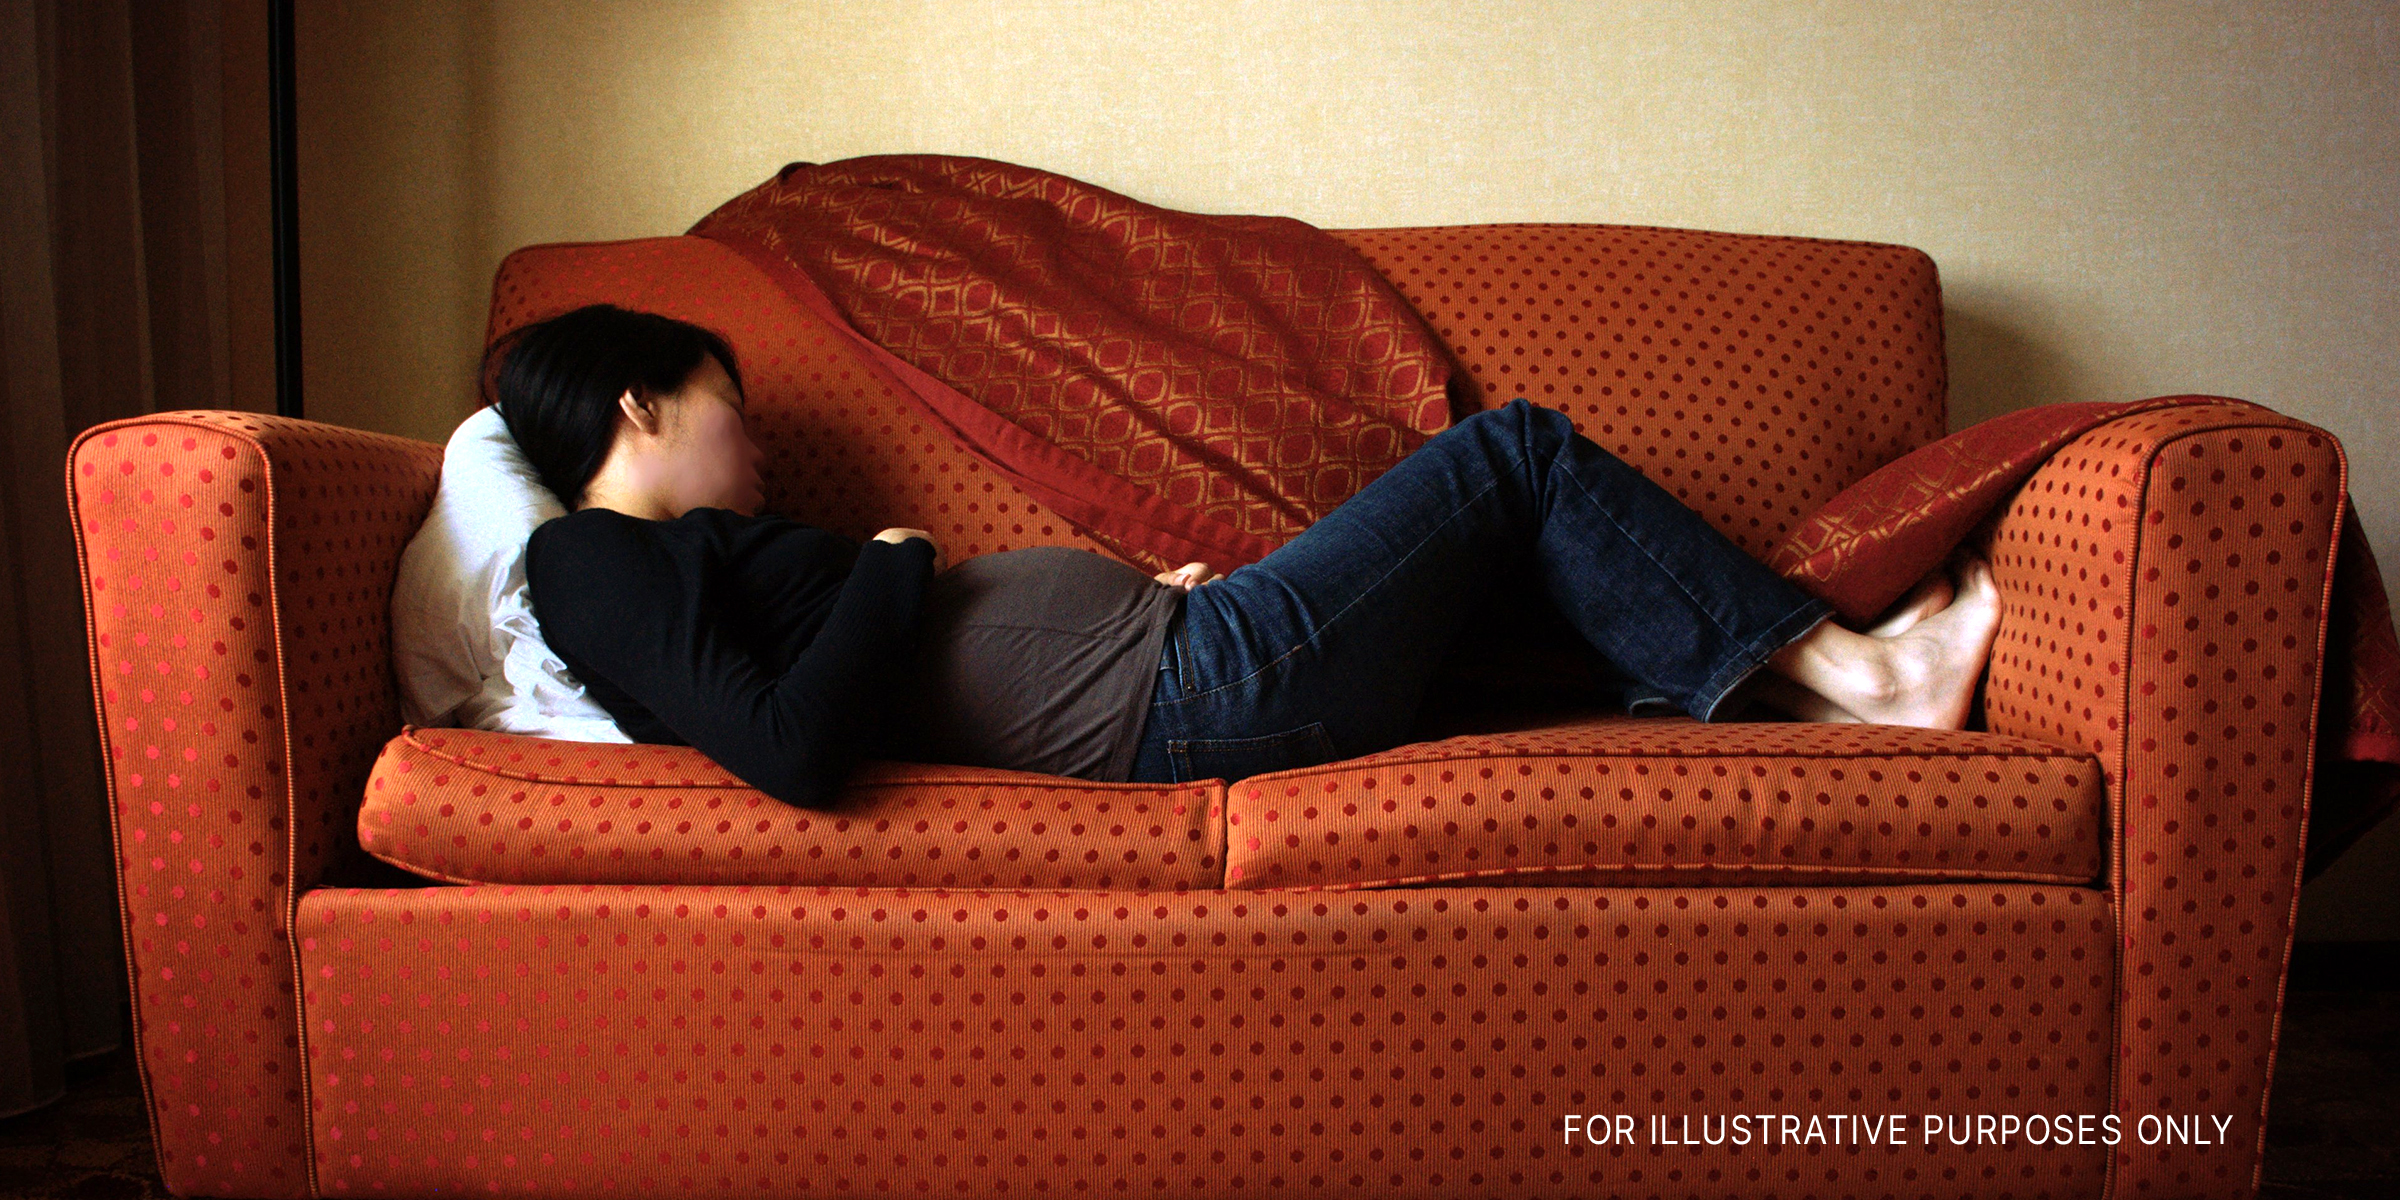 Eine schwangere Frau, die auf der Couch schläft | Quelle: Flickr.com/photos/koadmunkee/